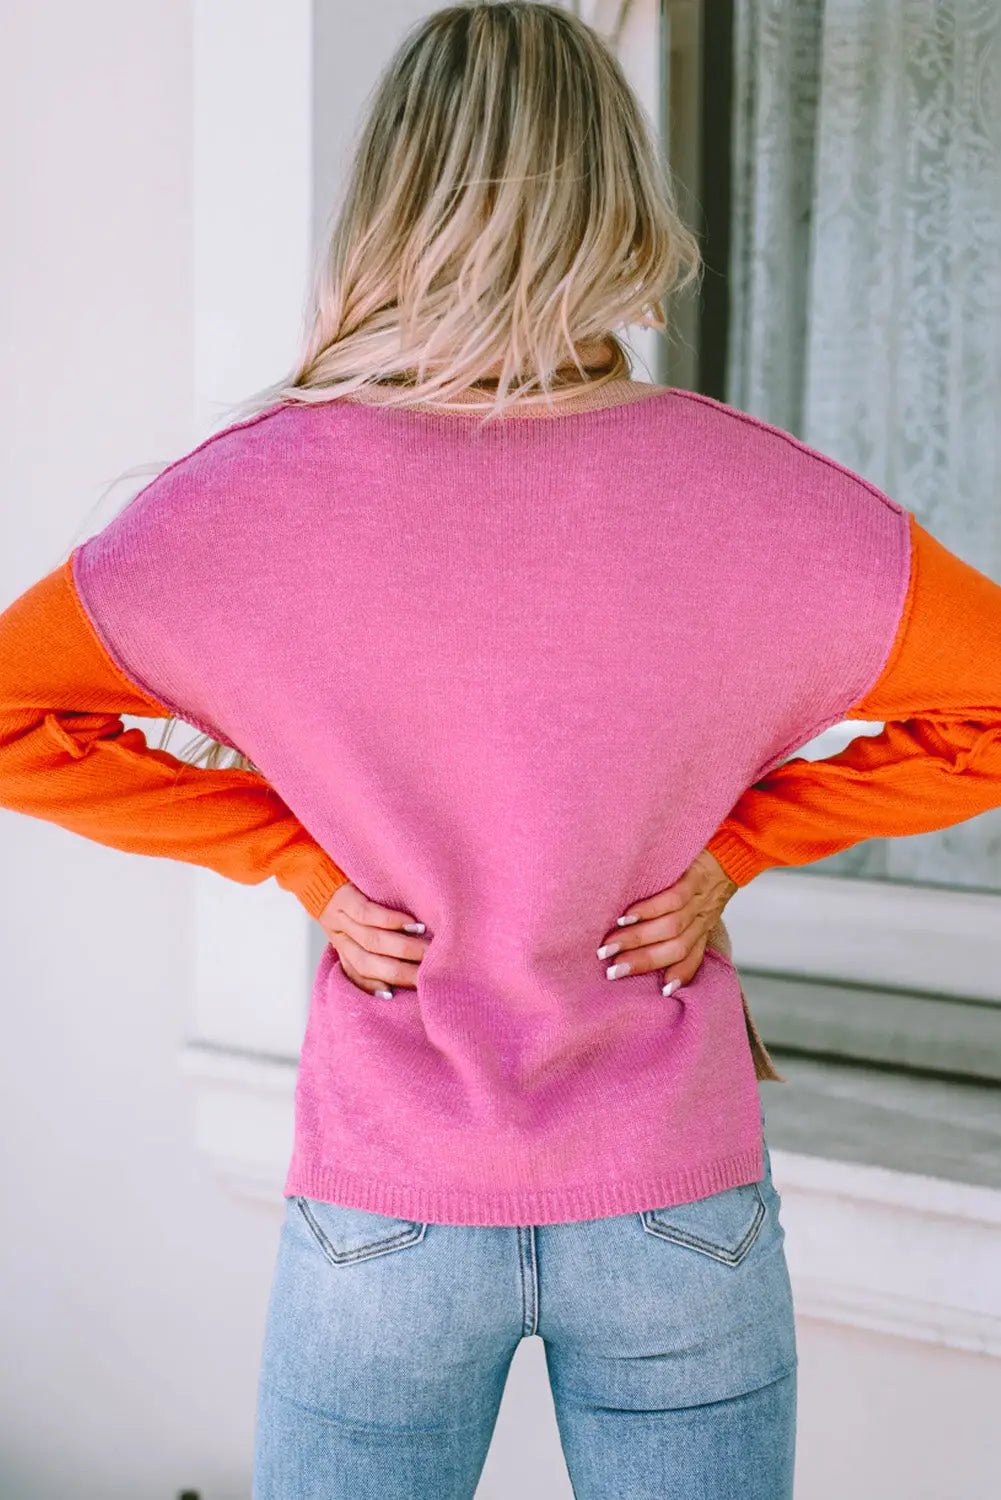 Khaki color block turtle neck drop shoulder knit sweater - sweaters & cardigans